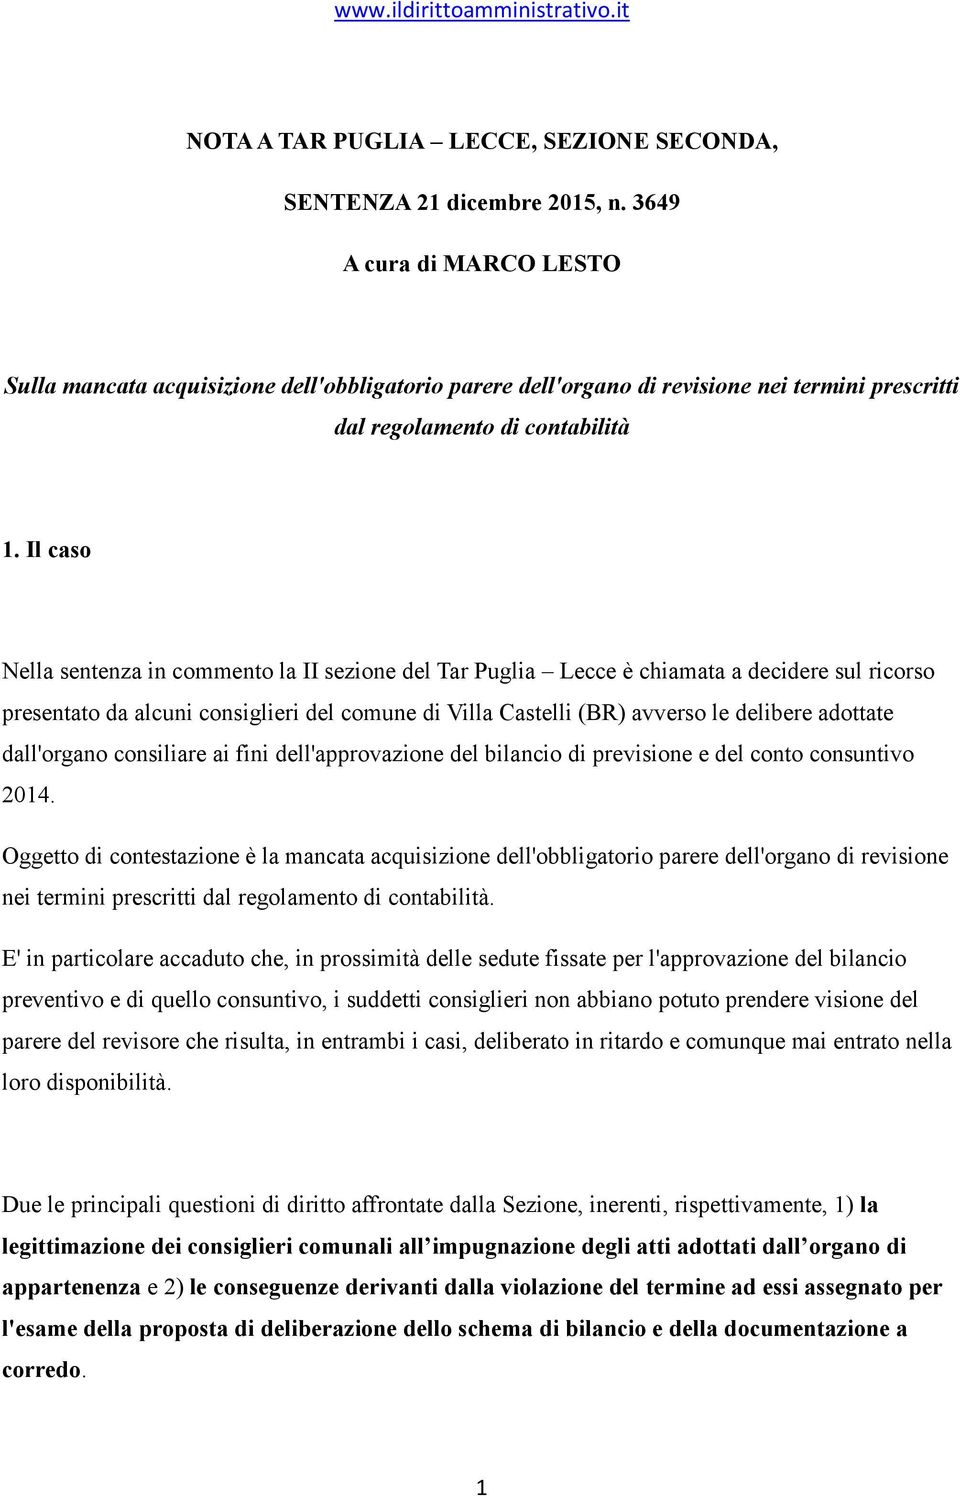 Il caso Nella sentenza in commento la II sezione del Tar Puglia Lecce è chiamata a decidere sul ricorso presentato da alcuni consiglieri del comune di Villa Castelli (BR) avverso le delibere adottate